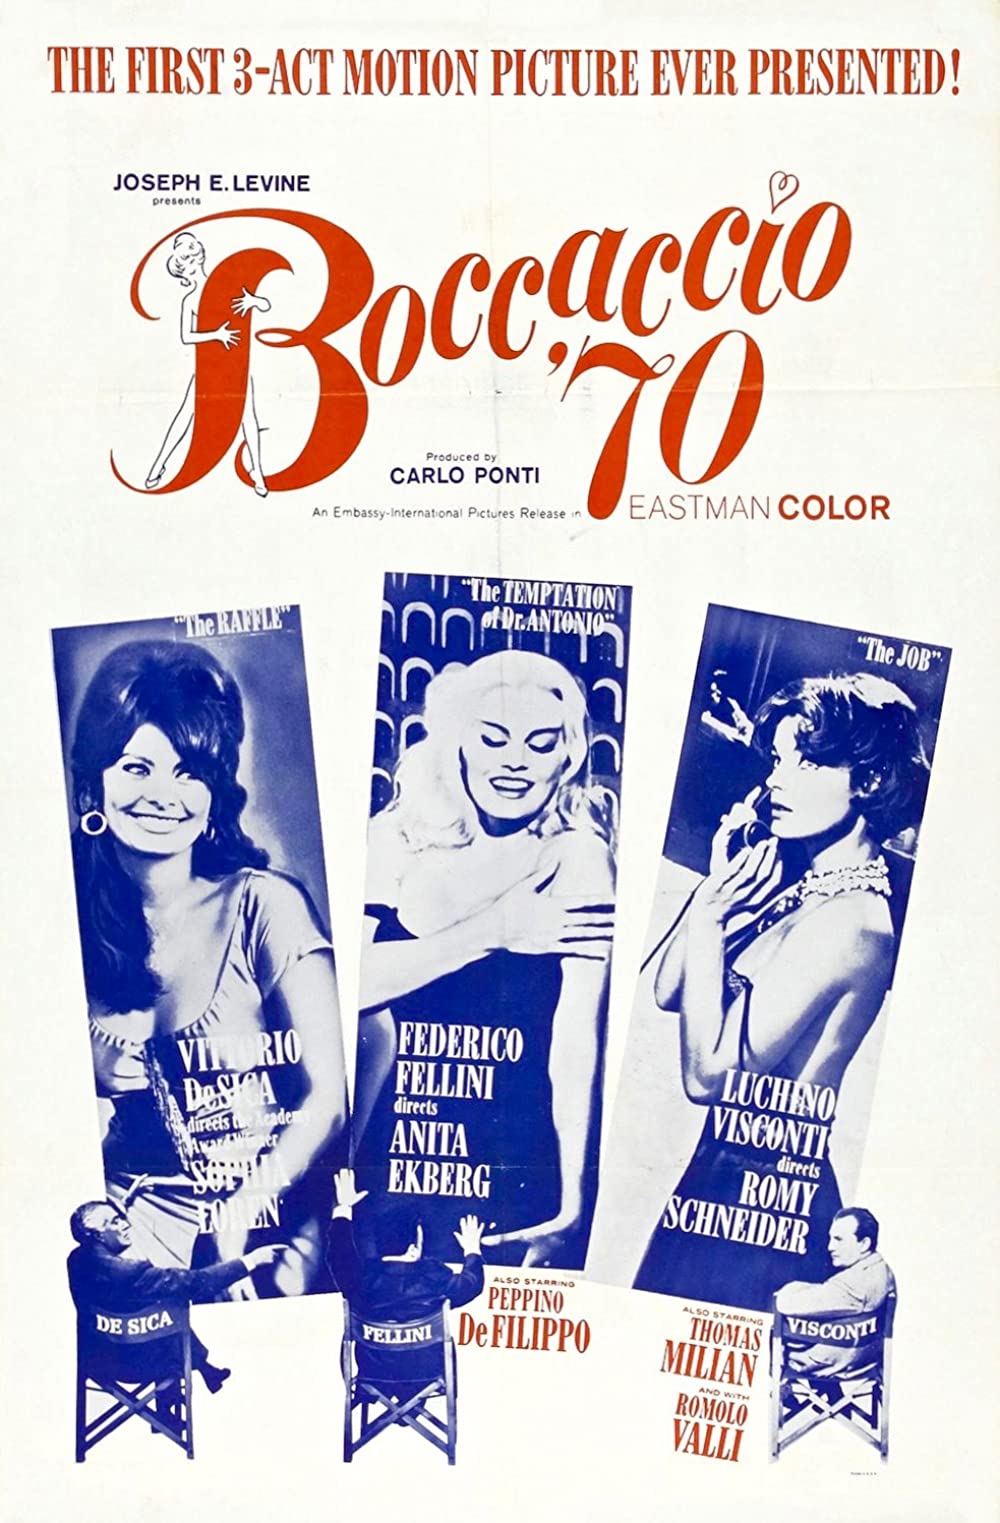 Boccaccio '70 (OV)